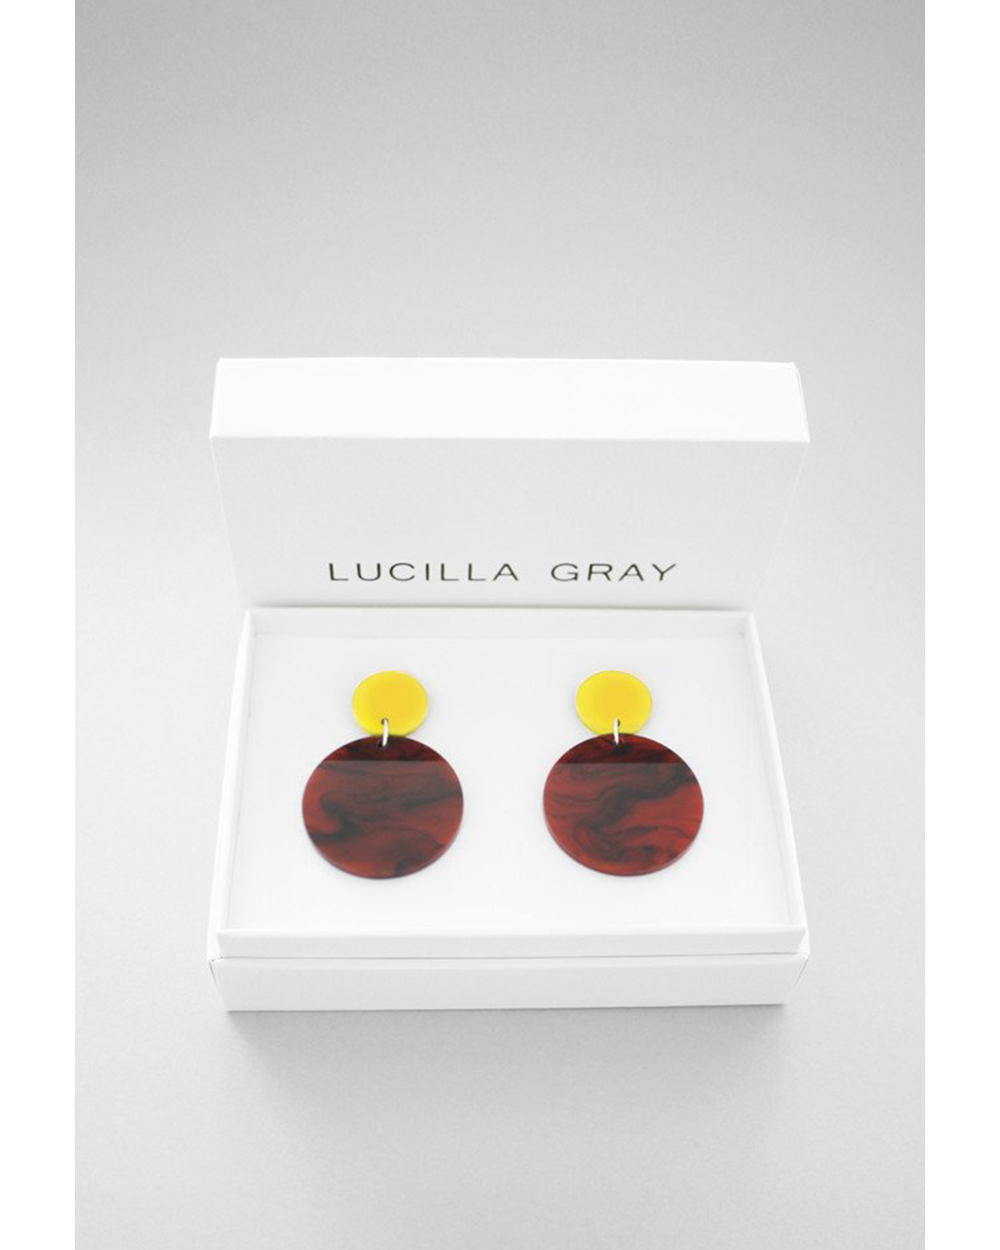 Lucilla Gray earrings, $79